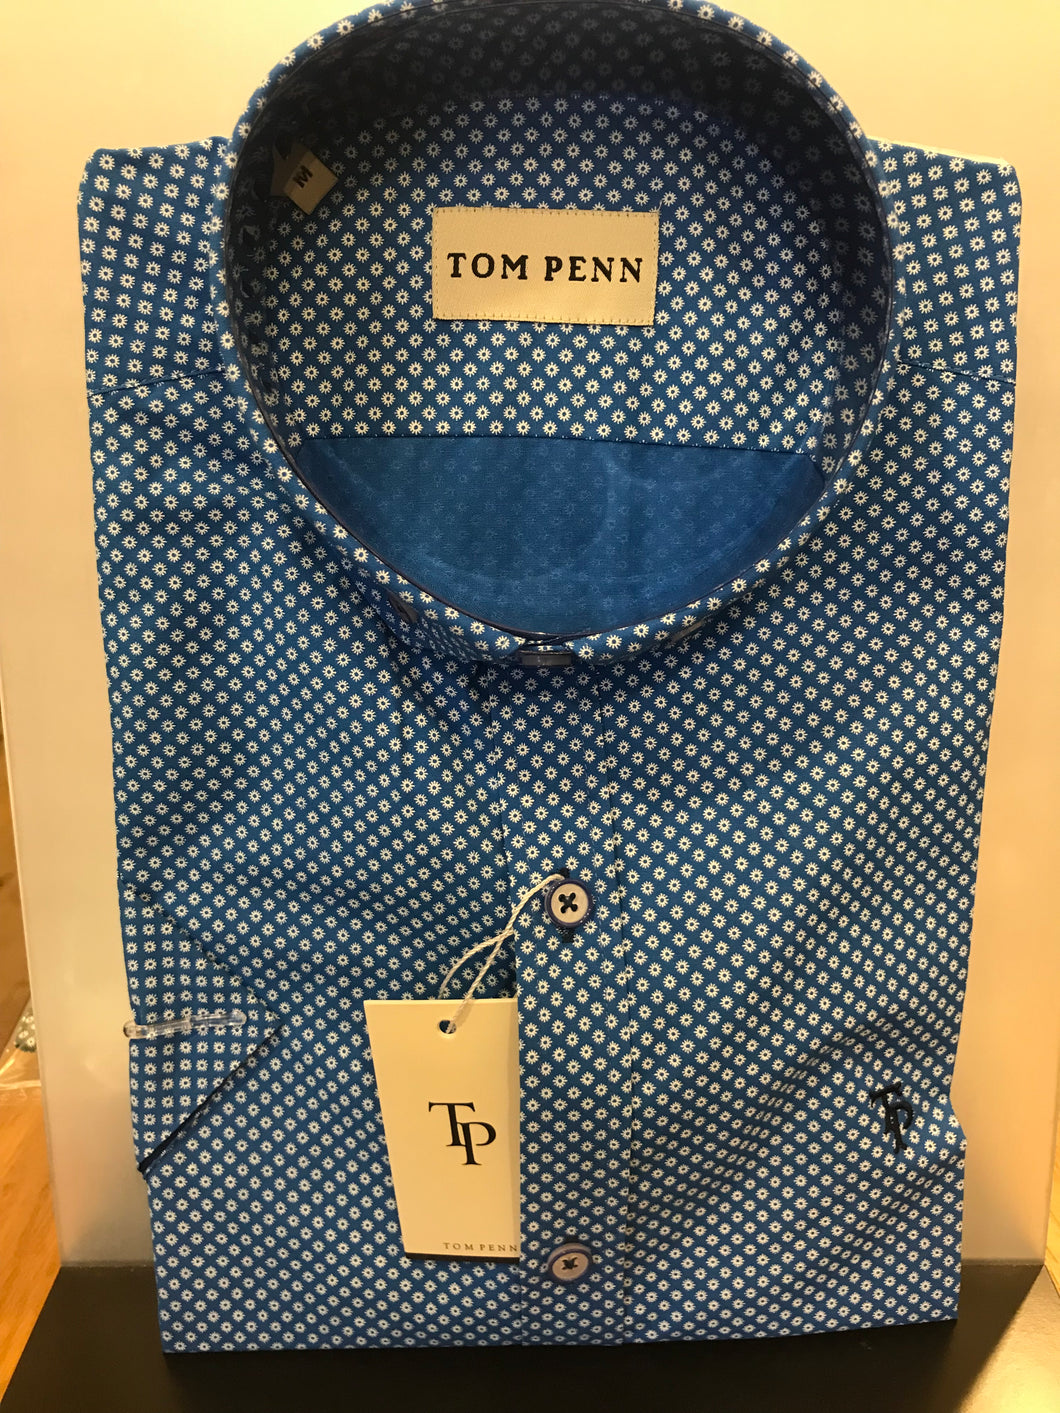 Tom Penn short sleeve shirts